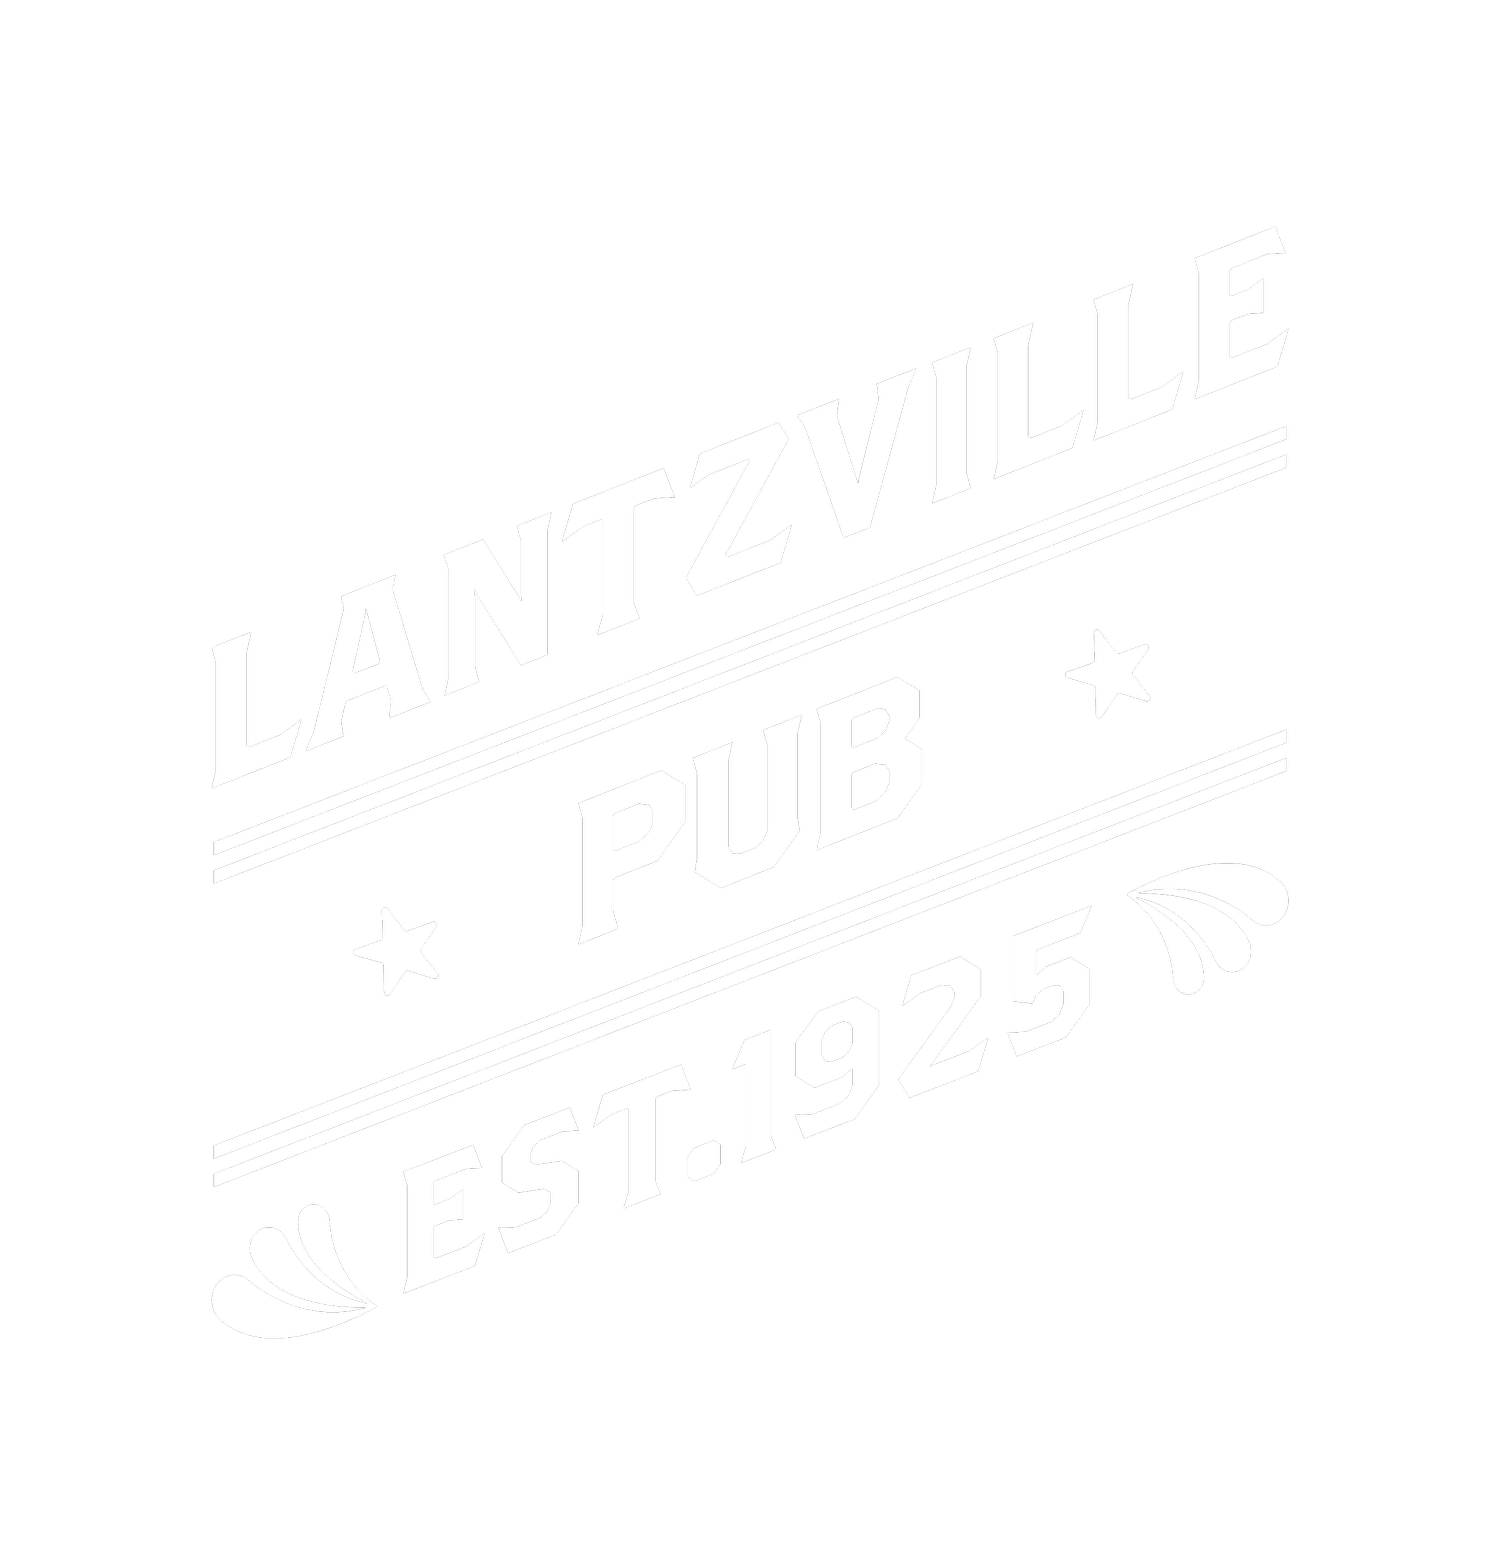 Lantzville Pub